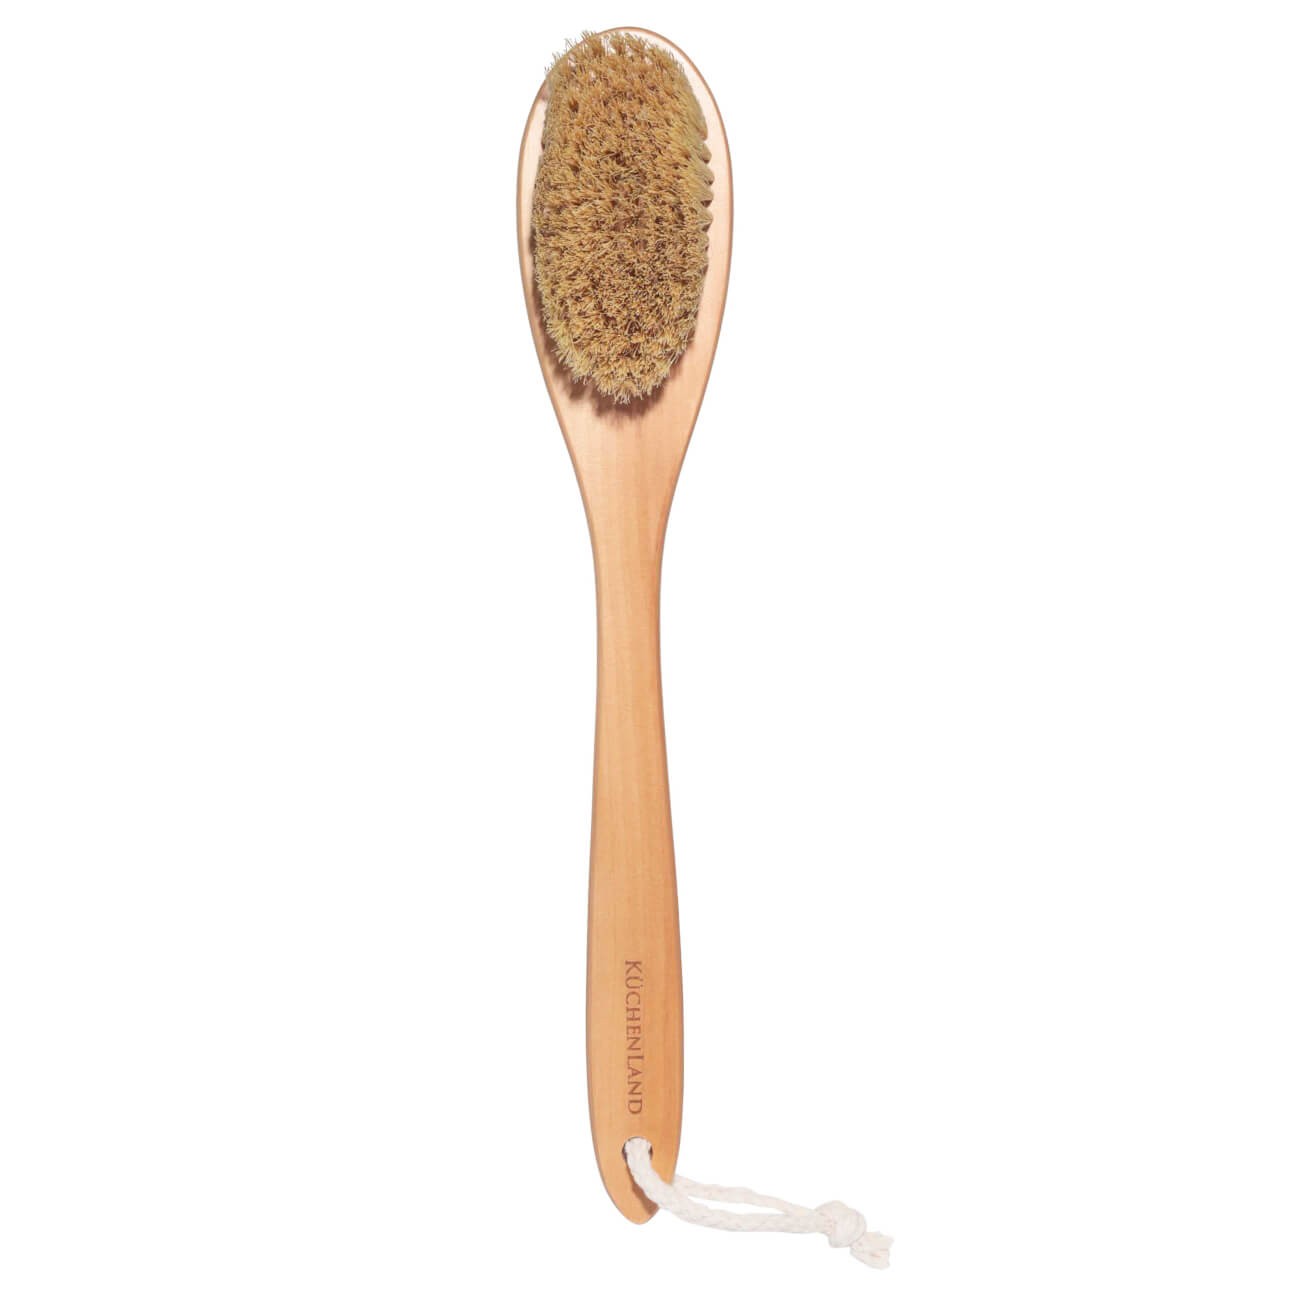 Щетка для сухого массажа, 38 см, дерево/растительное волокно, Bamboo spa щетка для бороды лакированная колодка волокно тампико 11×4×4 см